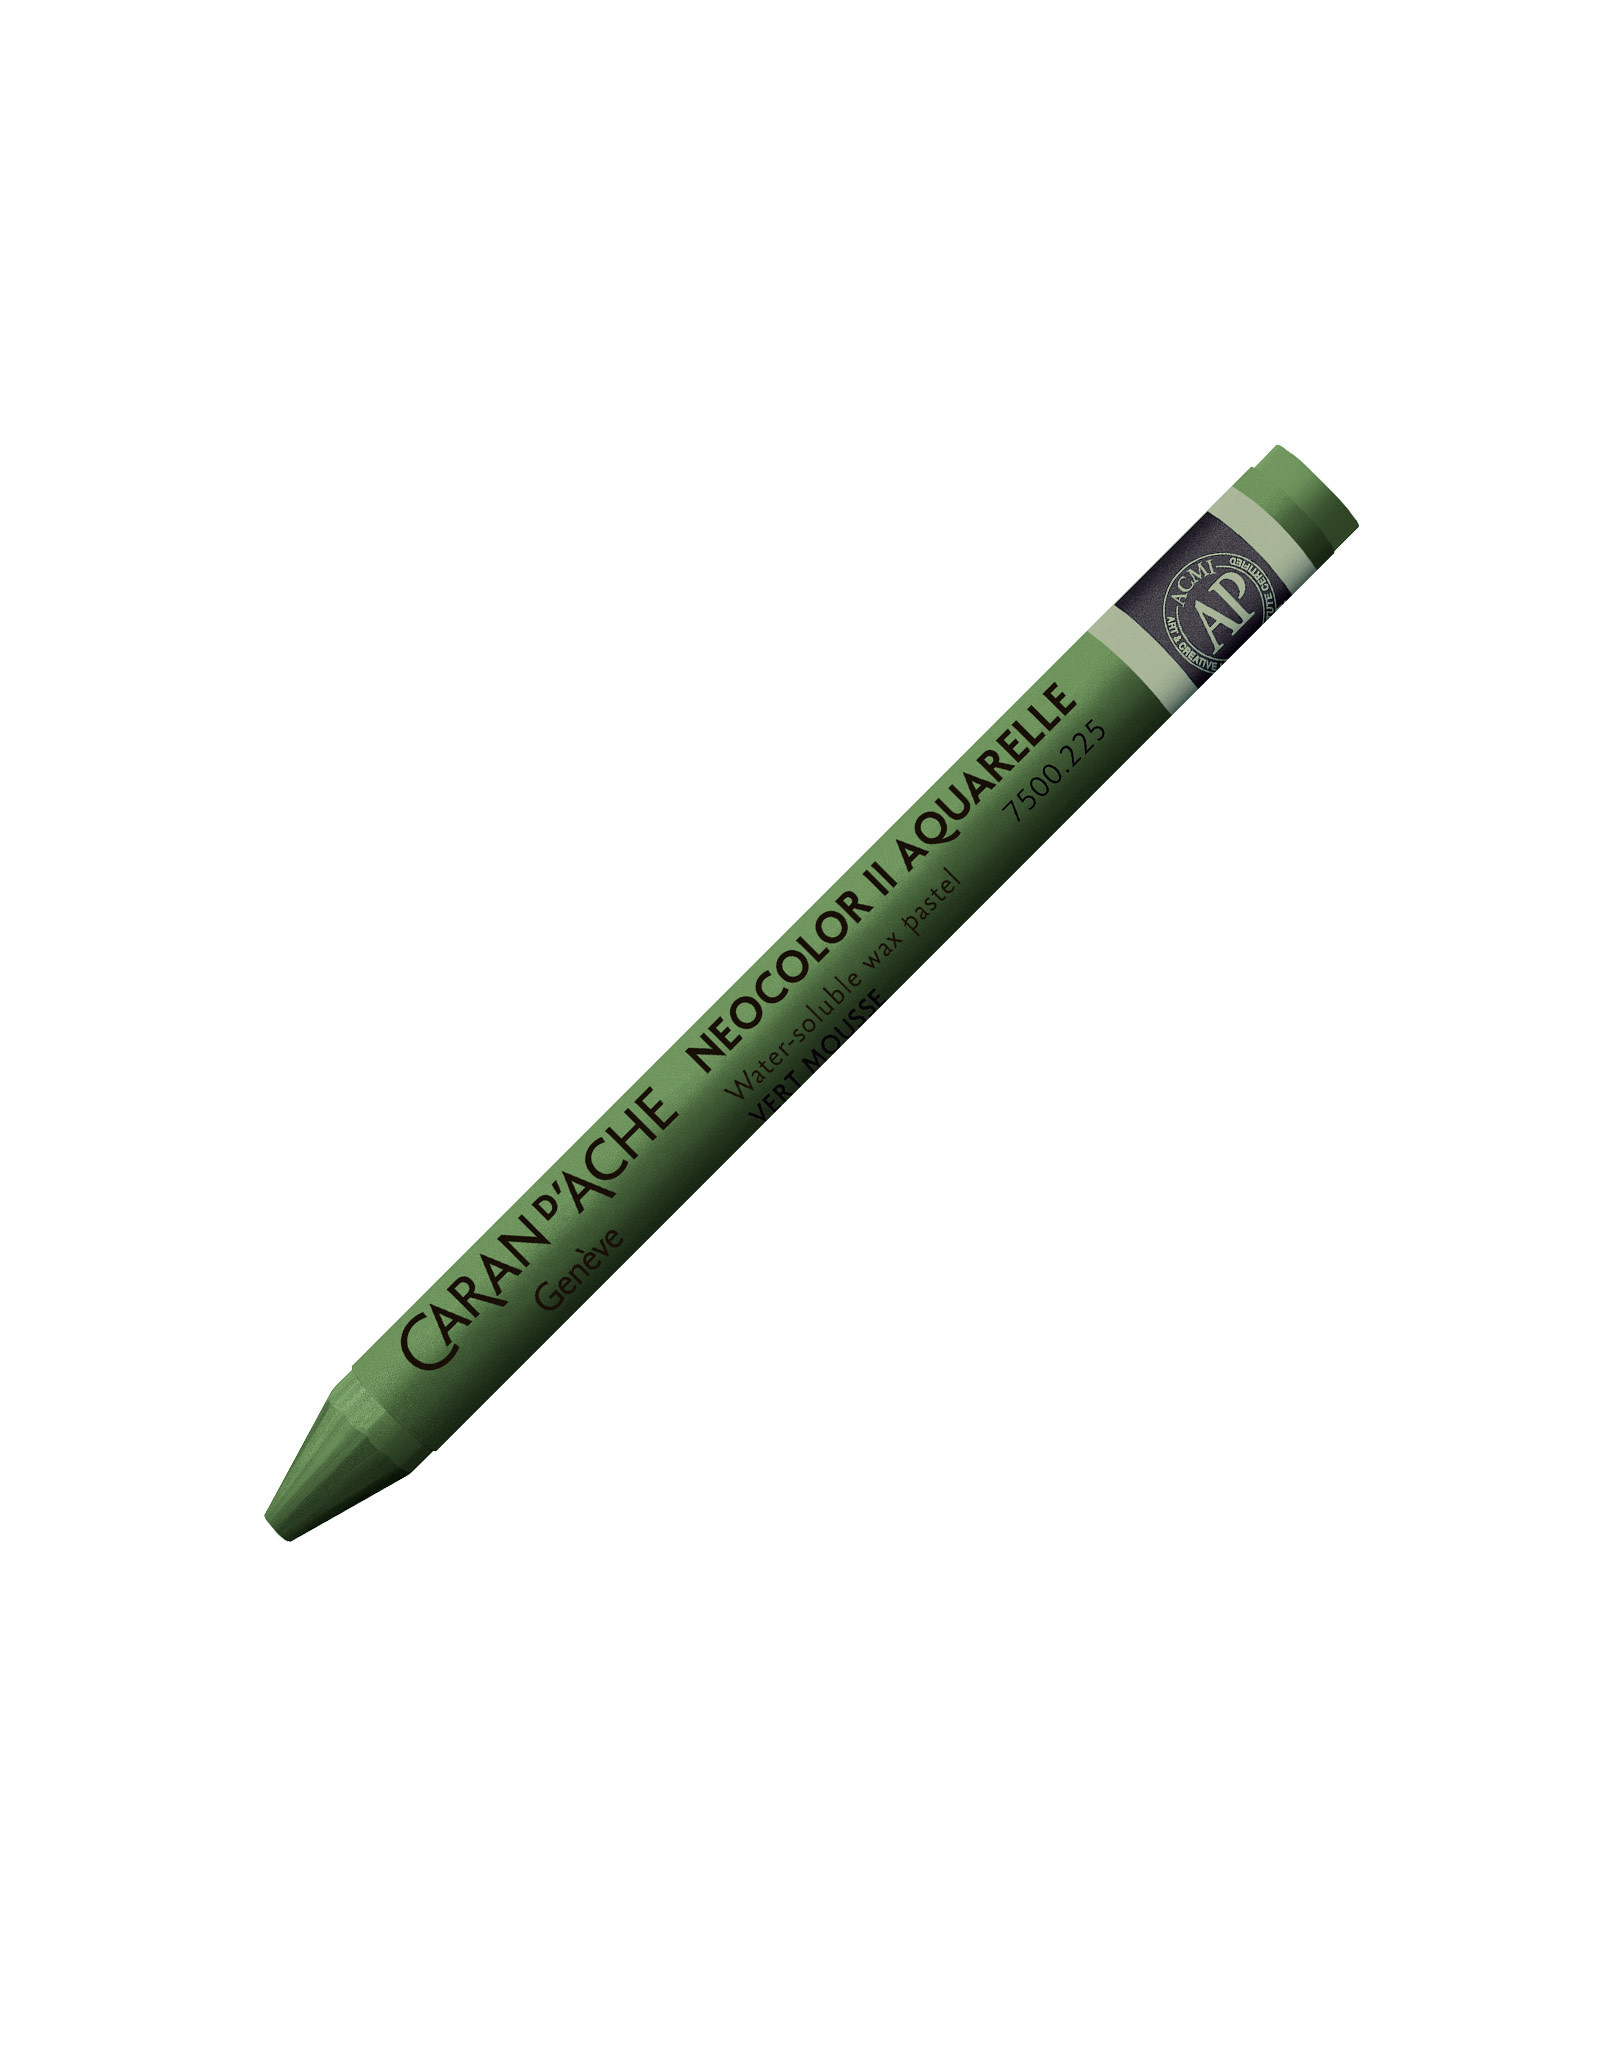 Caran d'Ache Neocolor II Crayons Moss Green